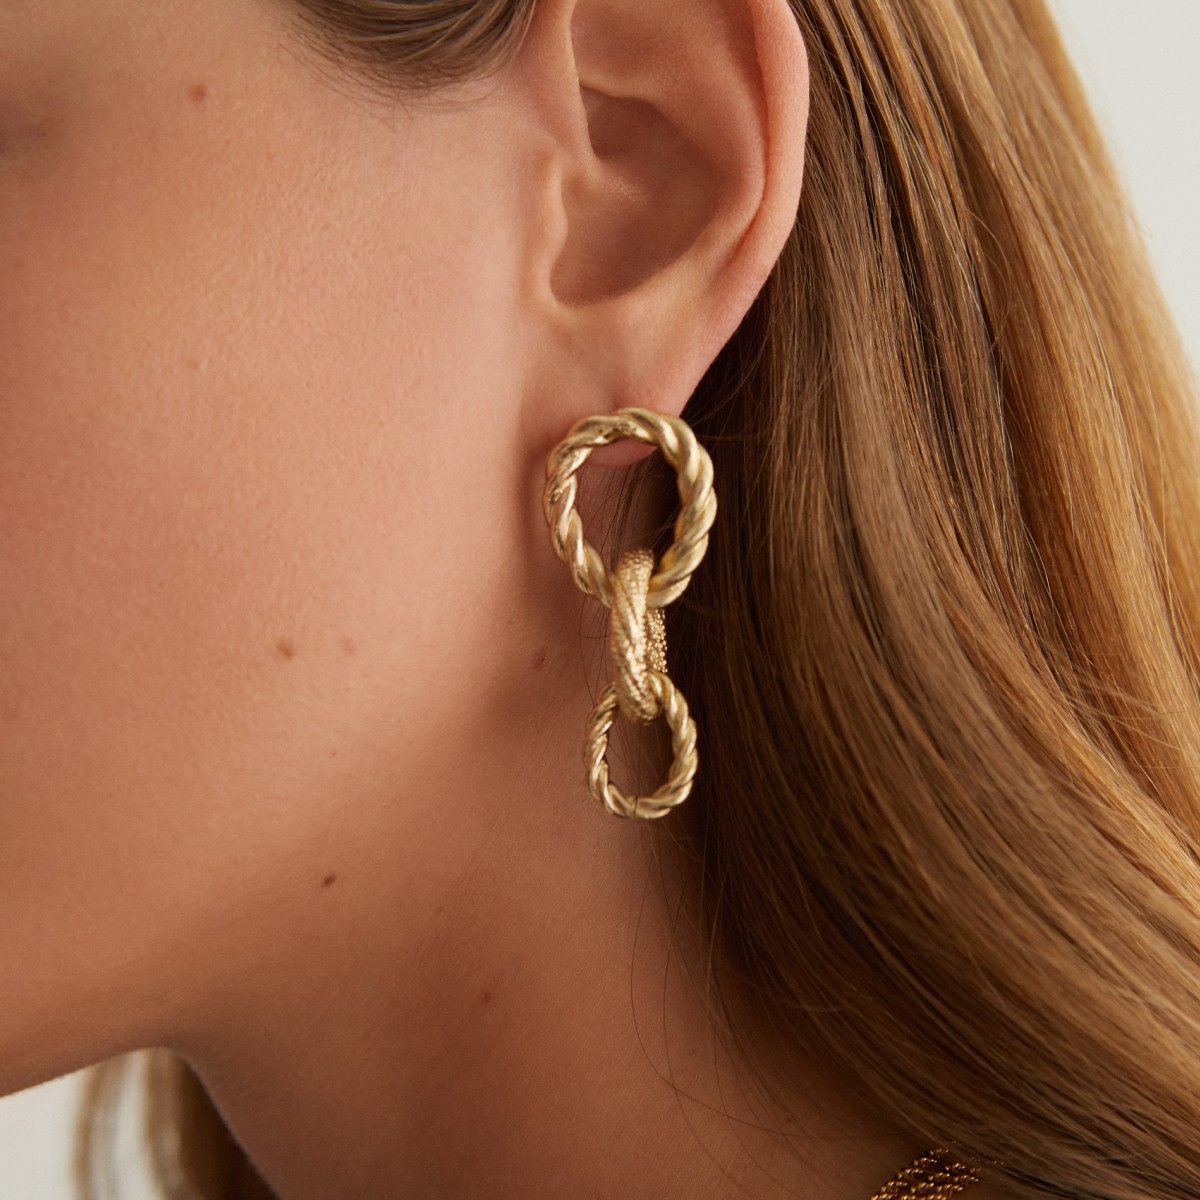 Mrs. Gold Earrings - Ohrringe - 24k vergoldet